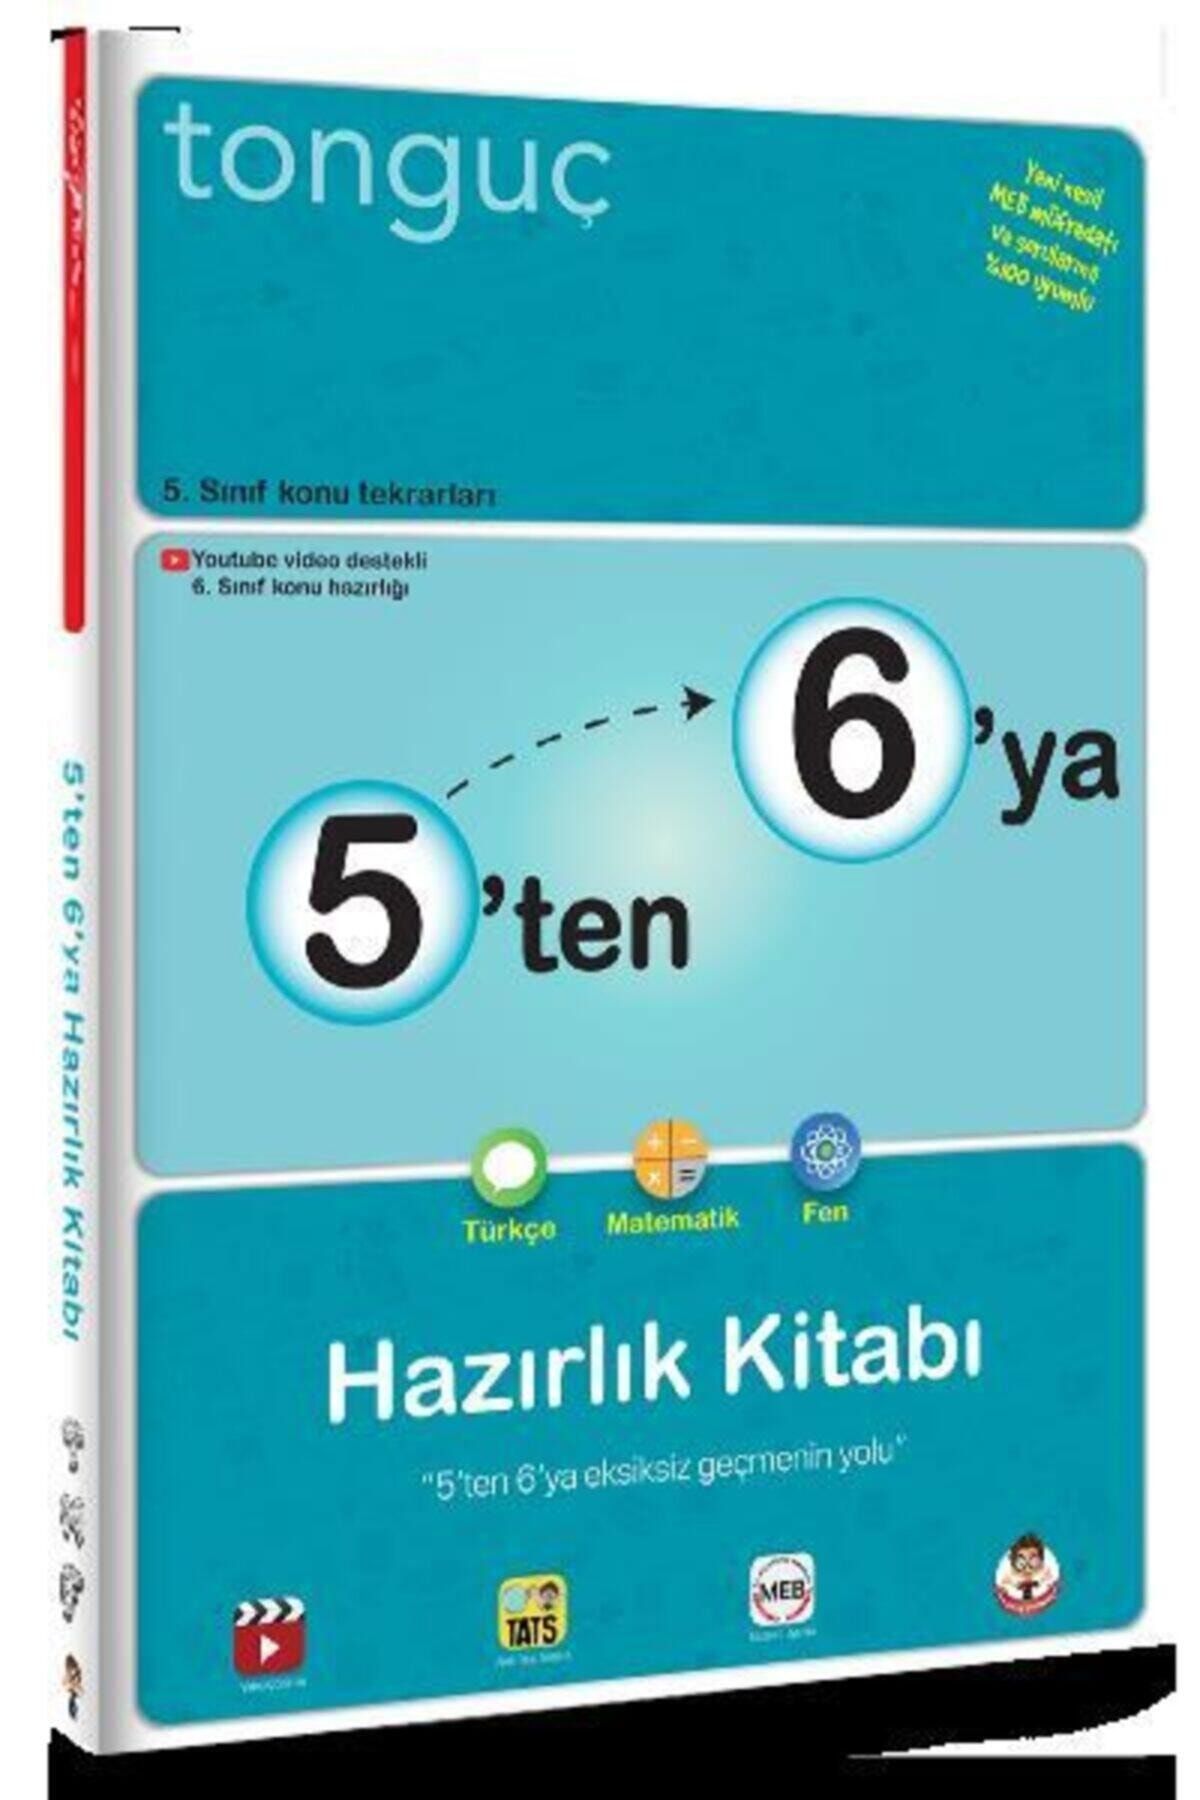 Tonguç Yayınları Tonguç 5'ten 6'ya Hazırlık Kitabı